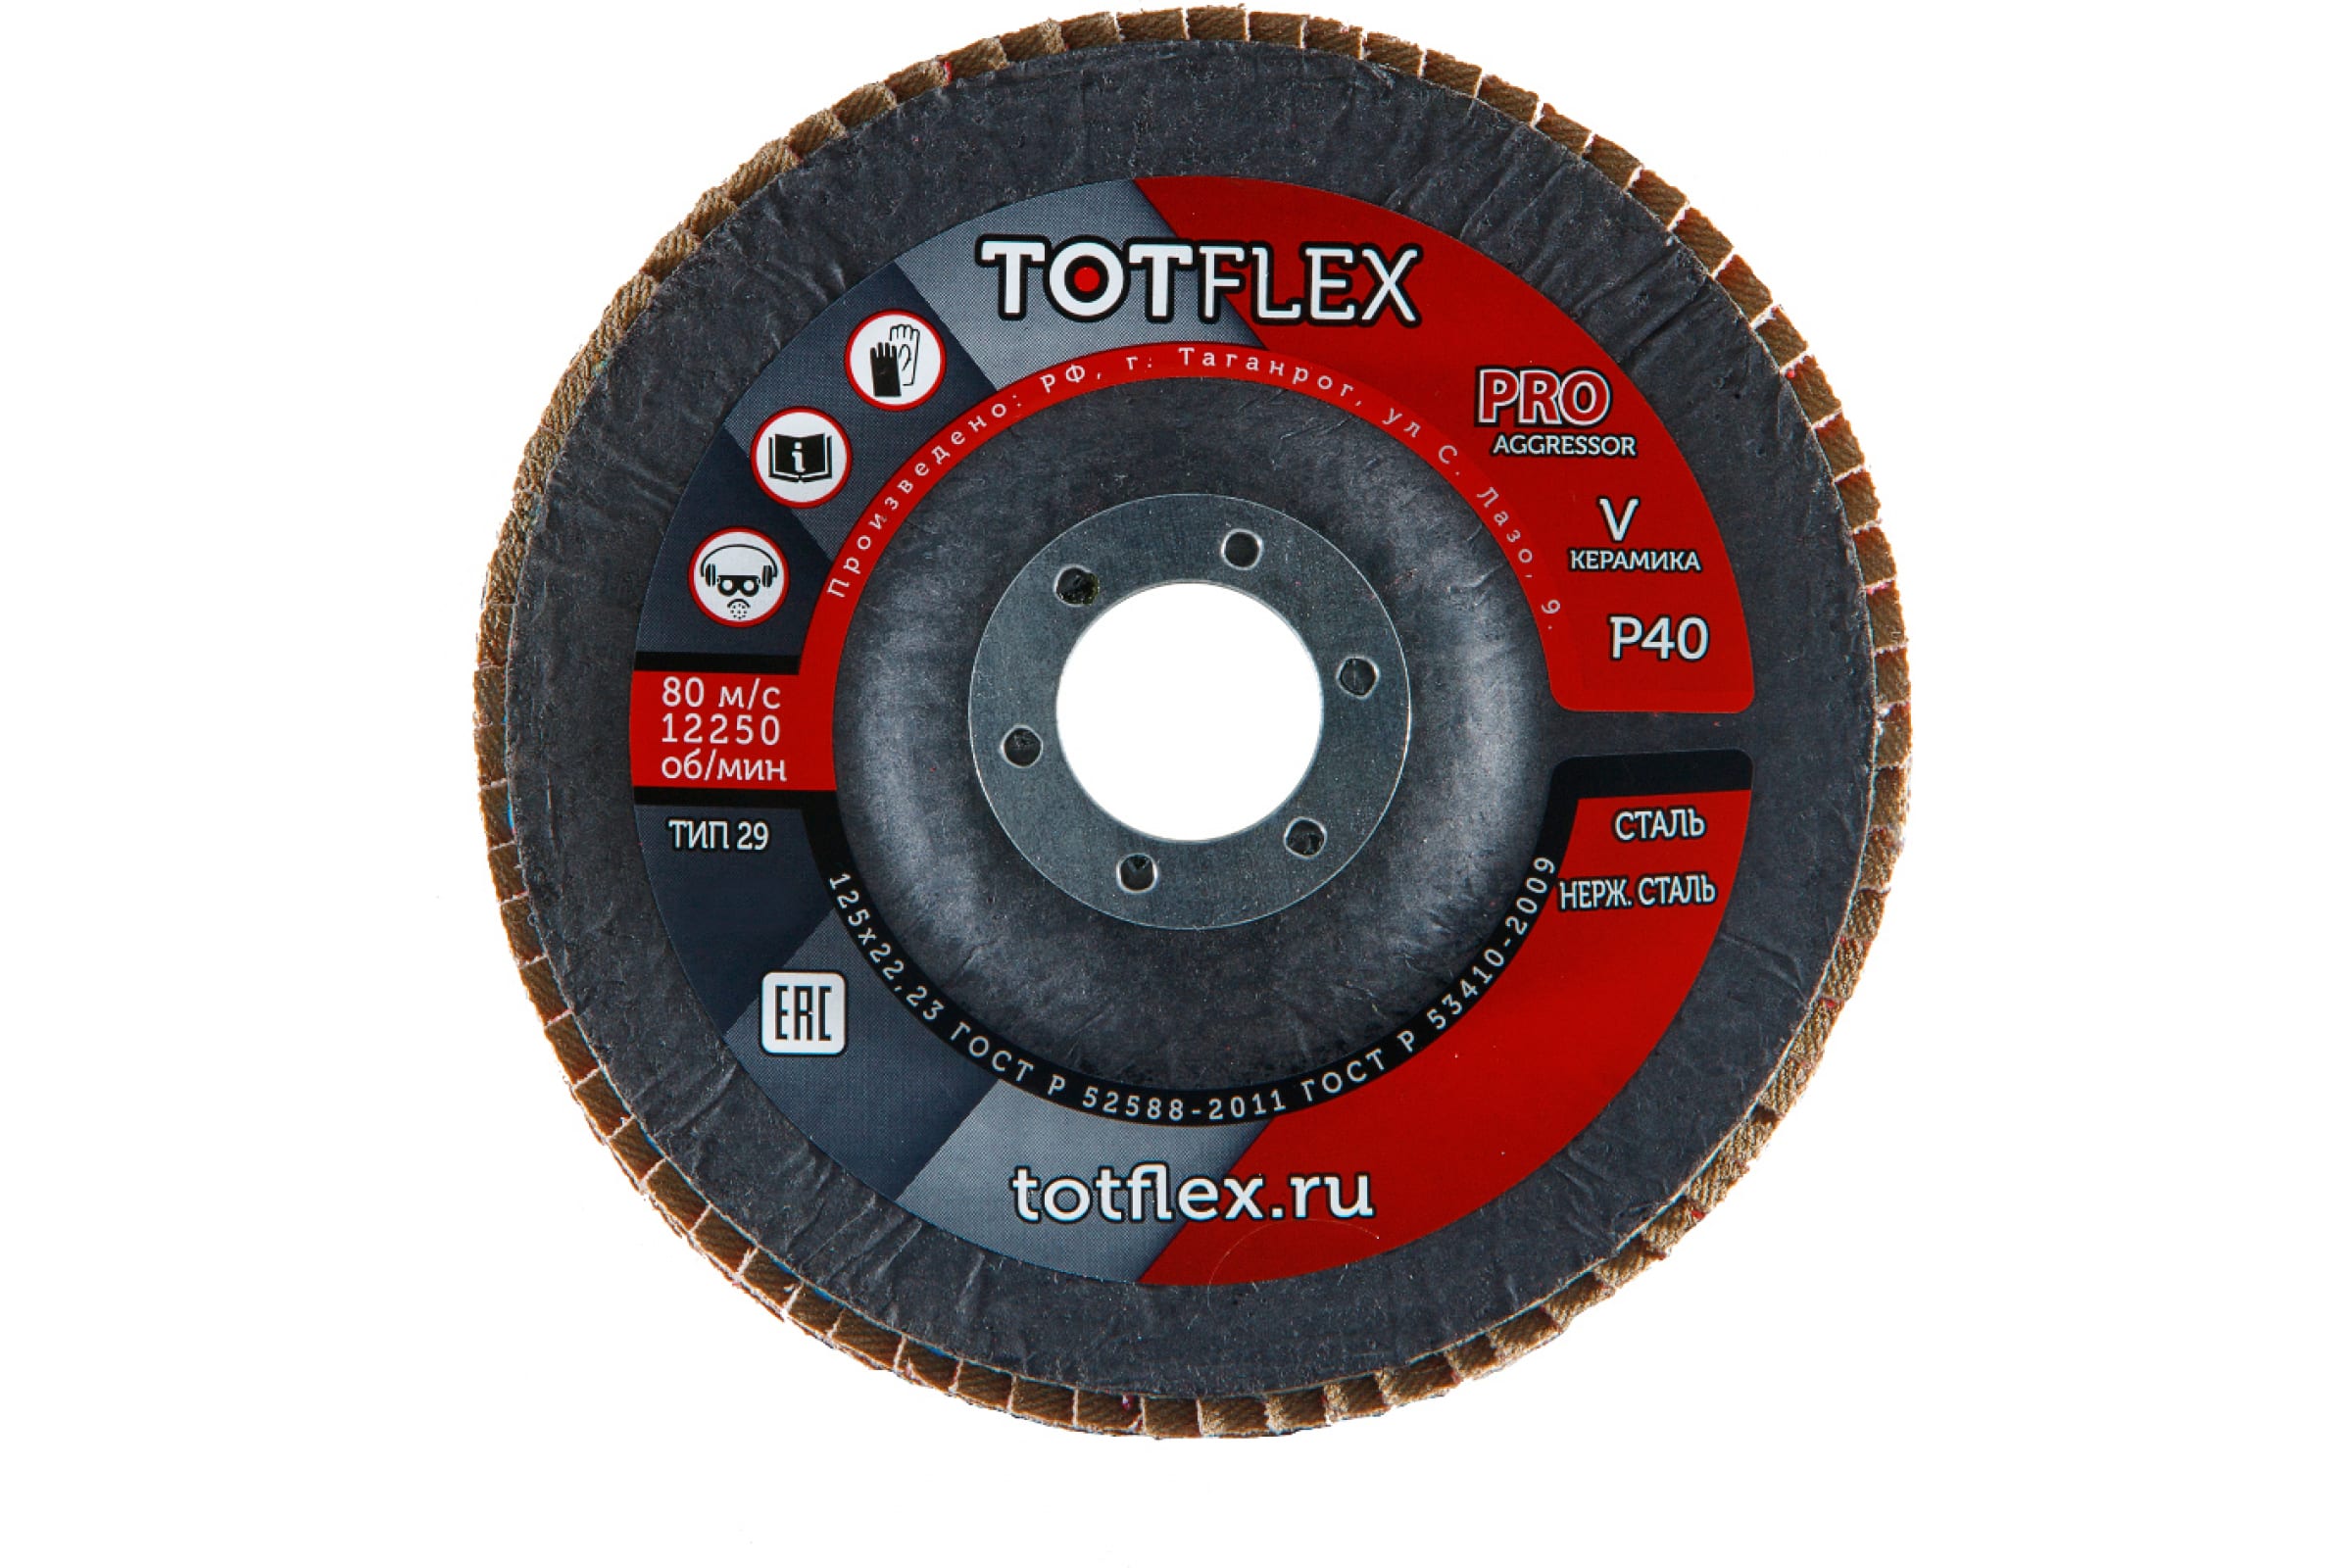 Totflex Круг лепестковый торцевой AGGRESSOR-PRO 2 125x22 V P40 4631148128248 торцевой лепестковый круг кедр